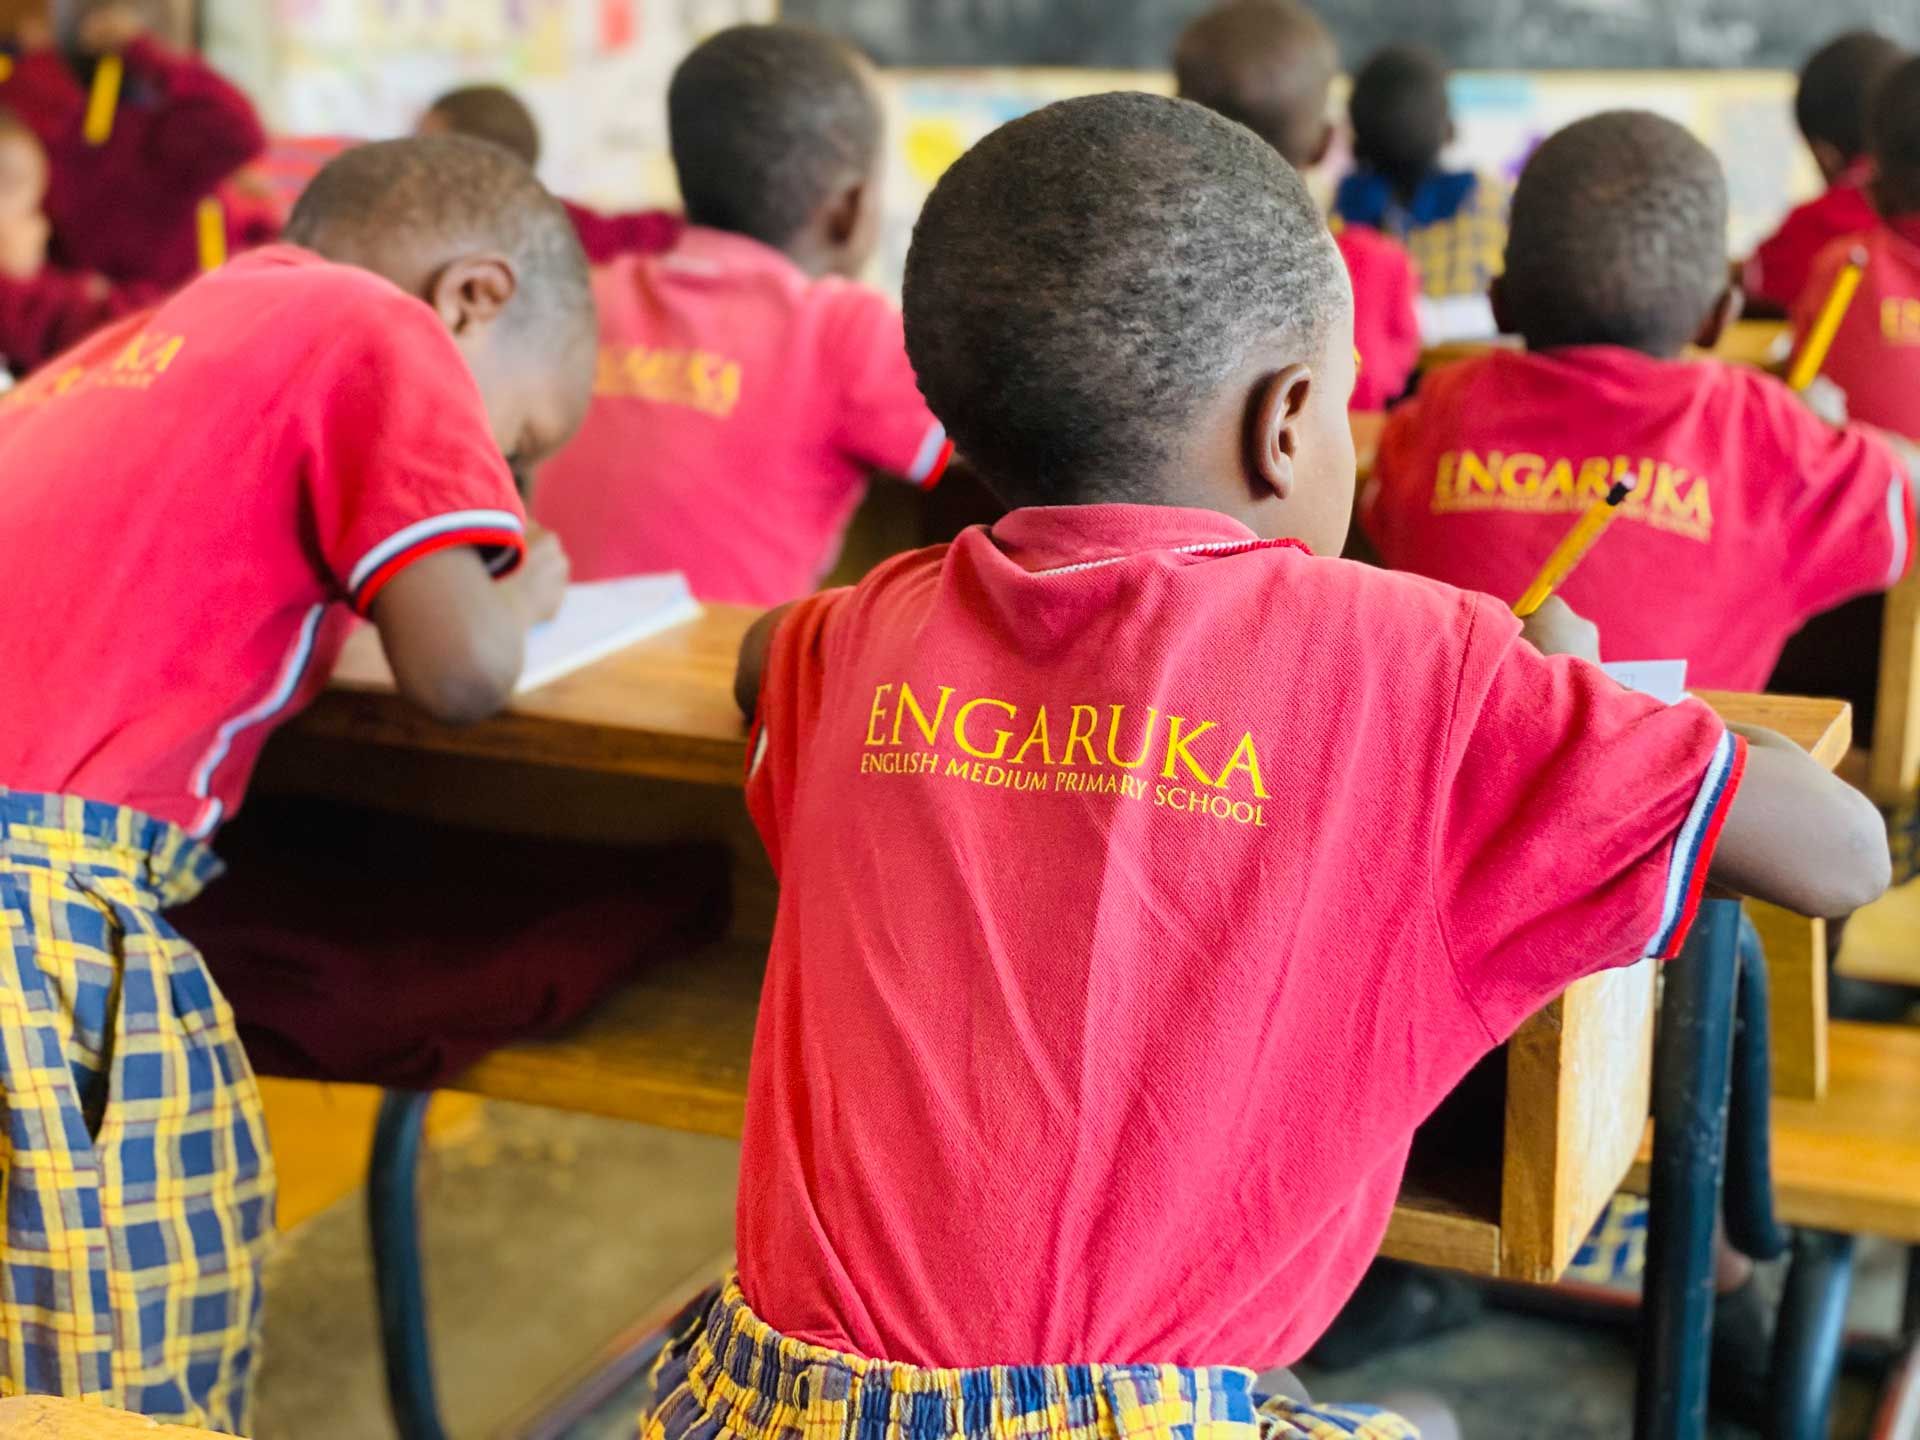 African school children at desks taking notes.